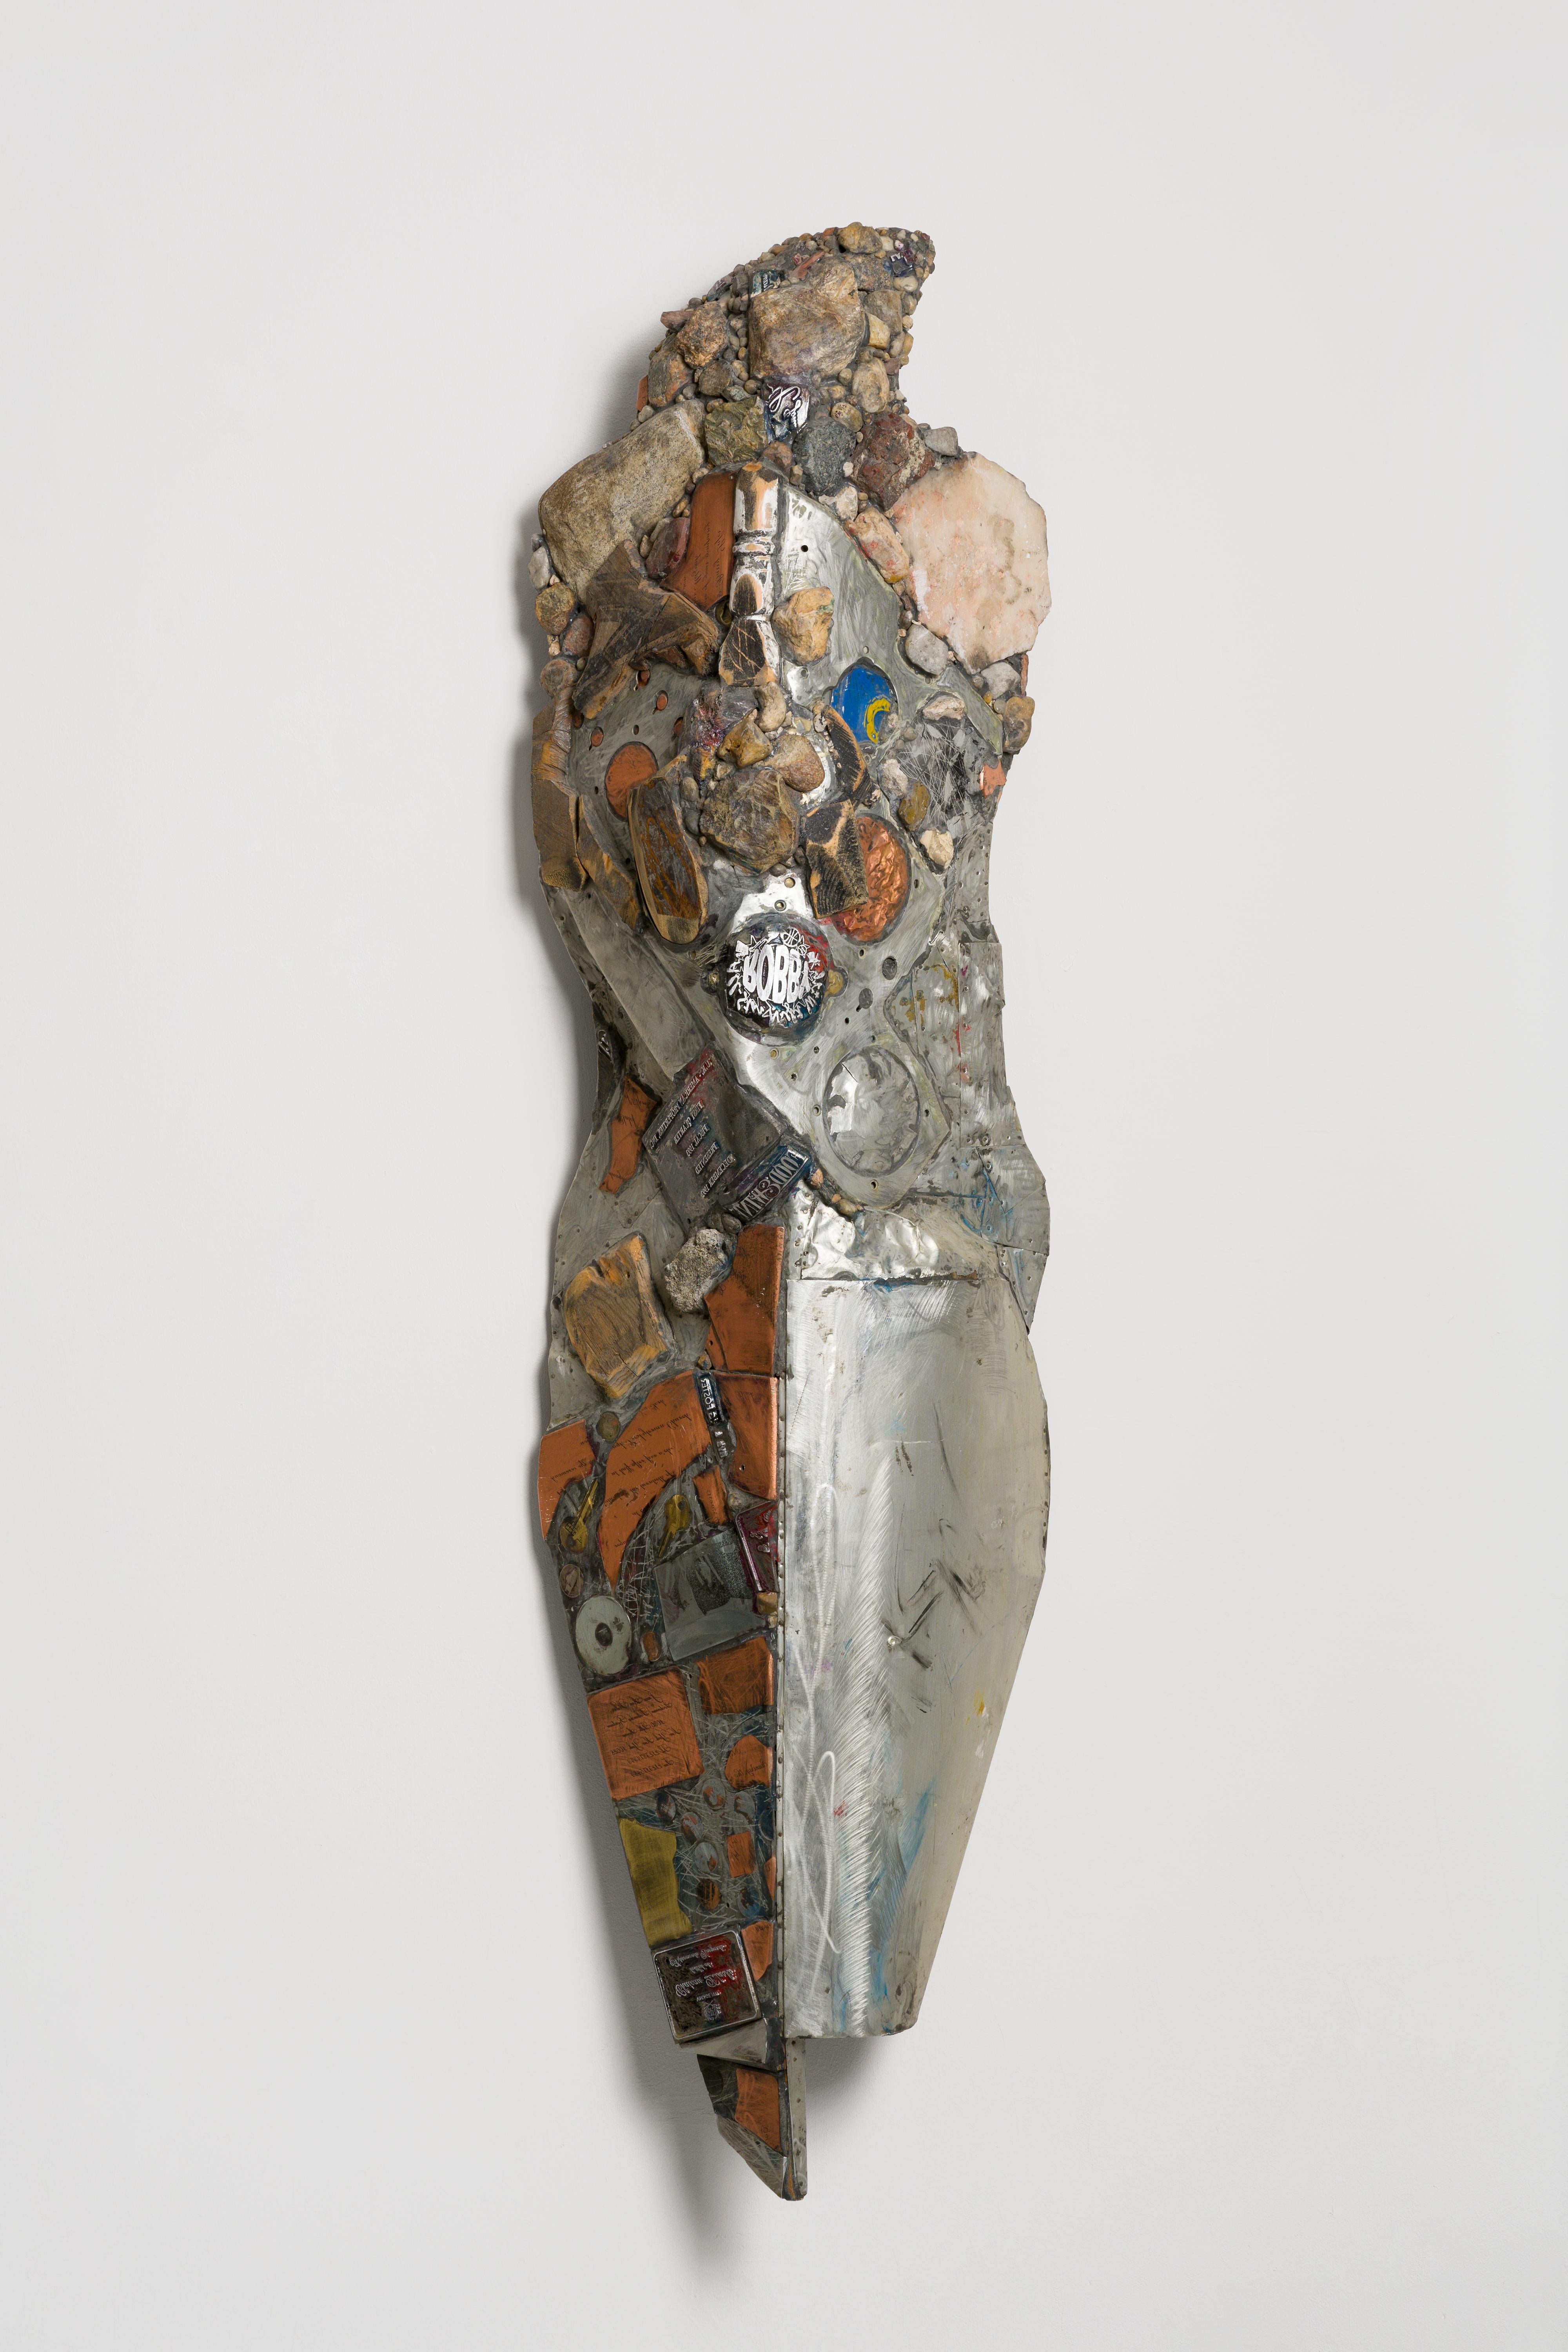 Diese Skulptur aus der Serie "Knights of Protection" von Linda Stein fungiert sowohl als Verteidiger im Kampf als auch als Symbol des Pazifismus.  Die Serie bezieht sich auf populäre und religiöse Ikonen wie Wonder Woman, Prinzessin Mononoke und die